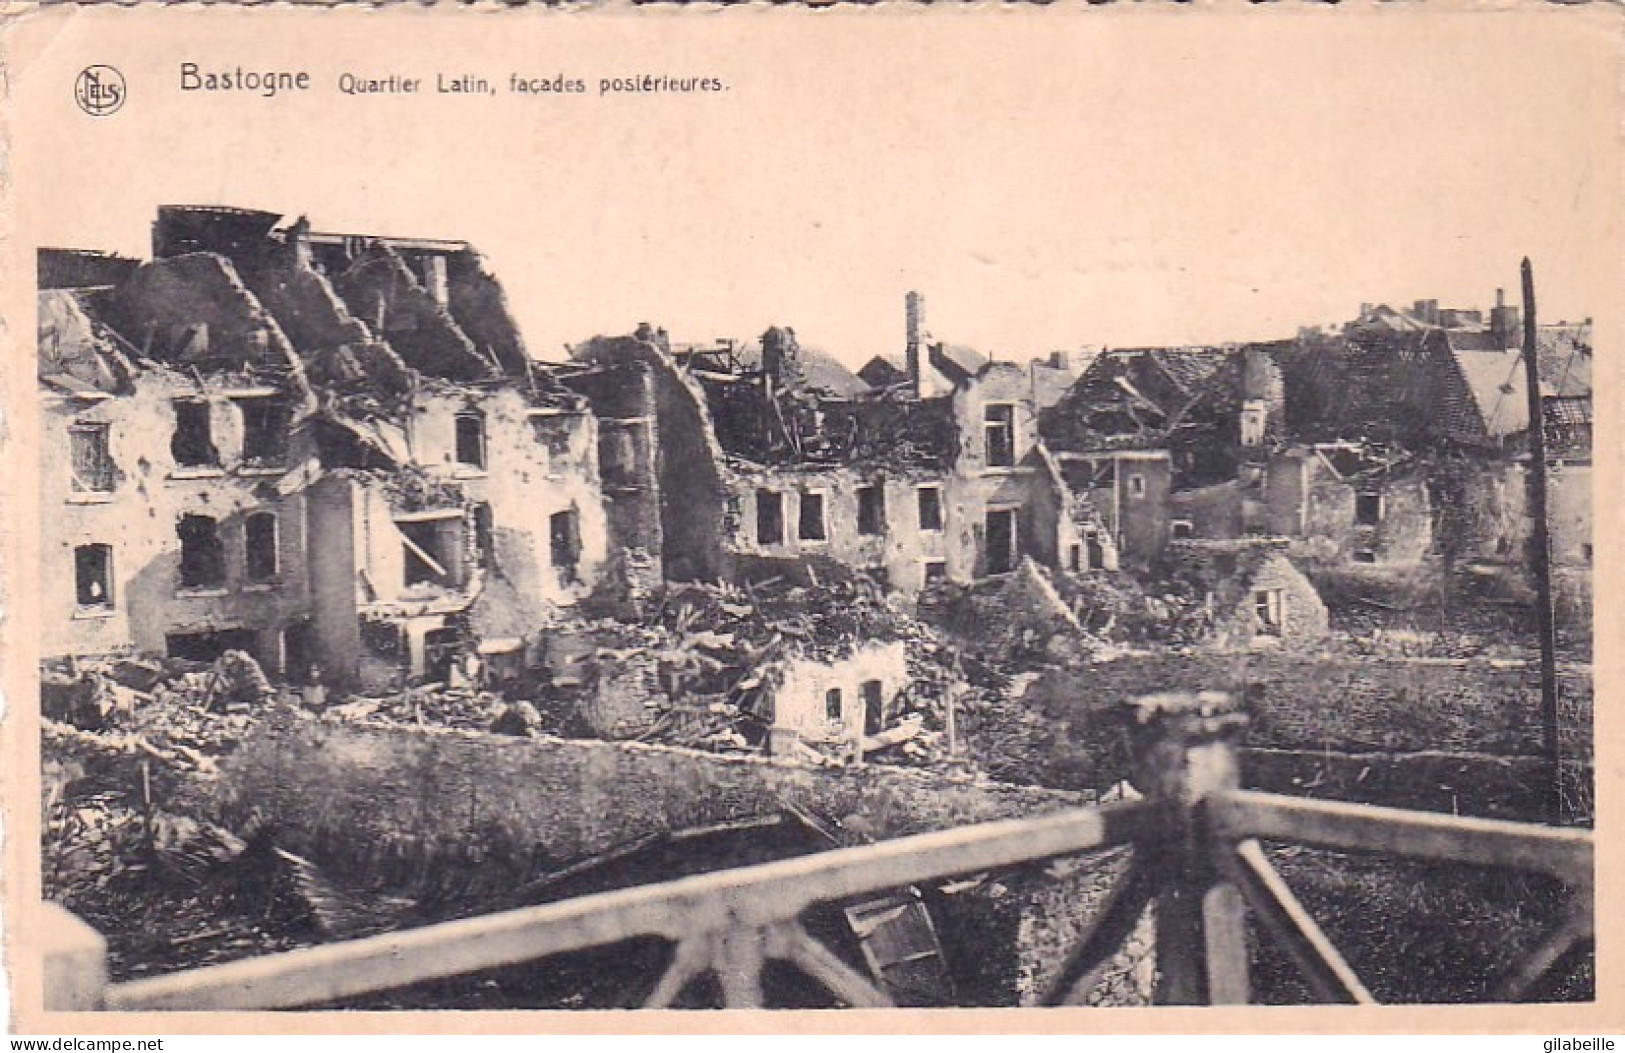  Bastogne - Quartier Latin - Facades Posterieures - Apres Le Siege De La Ville Decembre 1944 - Bastenaken